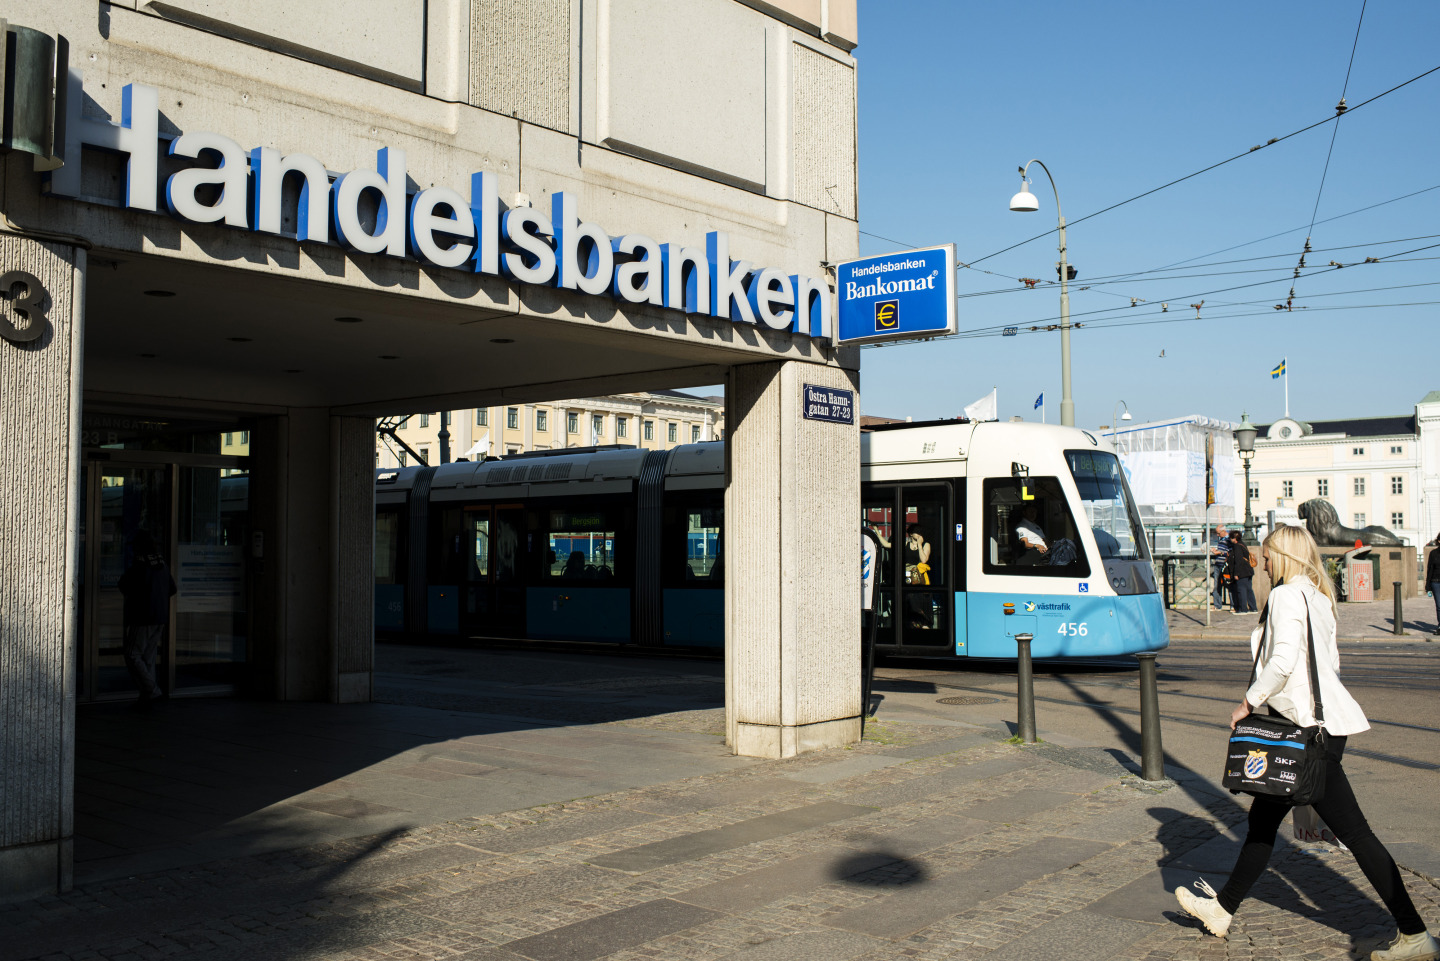 A public tram passes the offices of Svenska Handelsbanken in Gothenburg, Sweden.